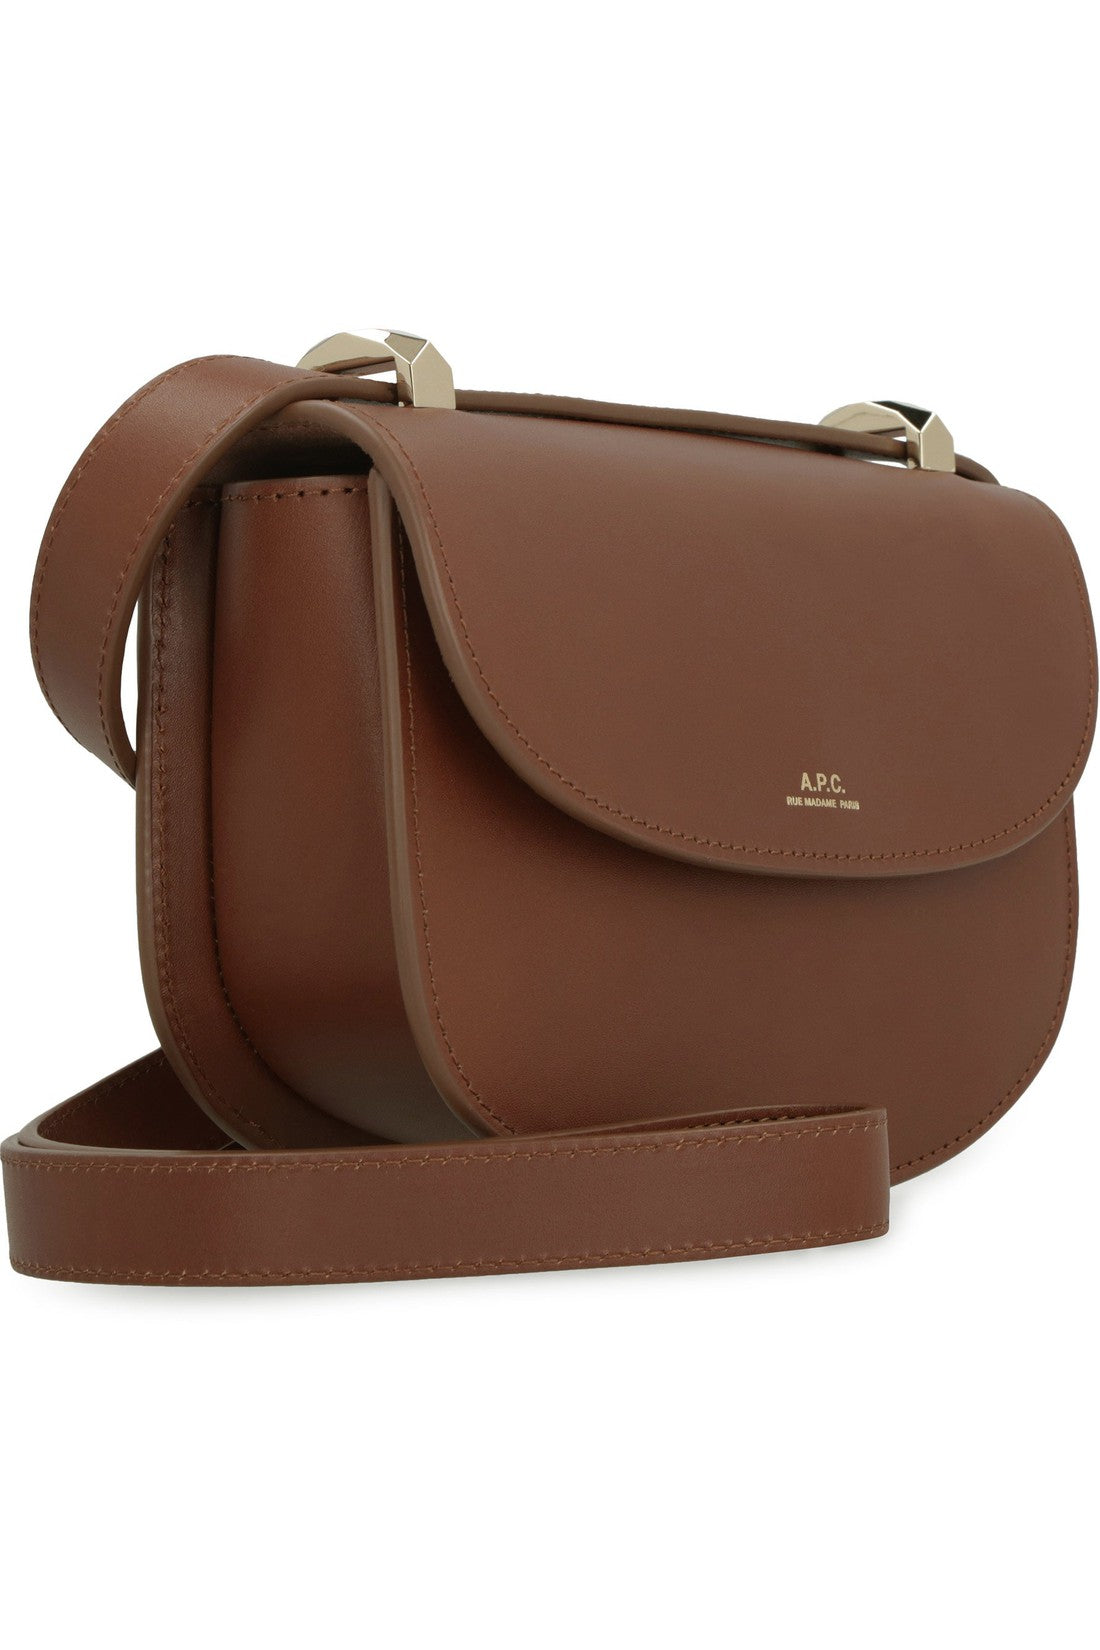 A.P.C.-OUTLET-SALE-Leather crossbody bag-ARCHIVIST